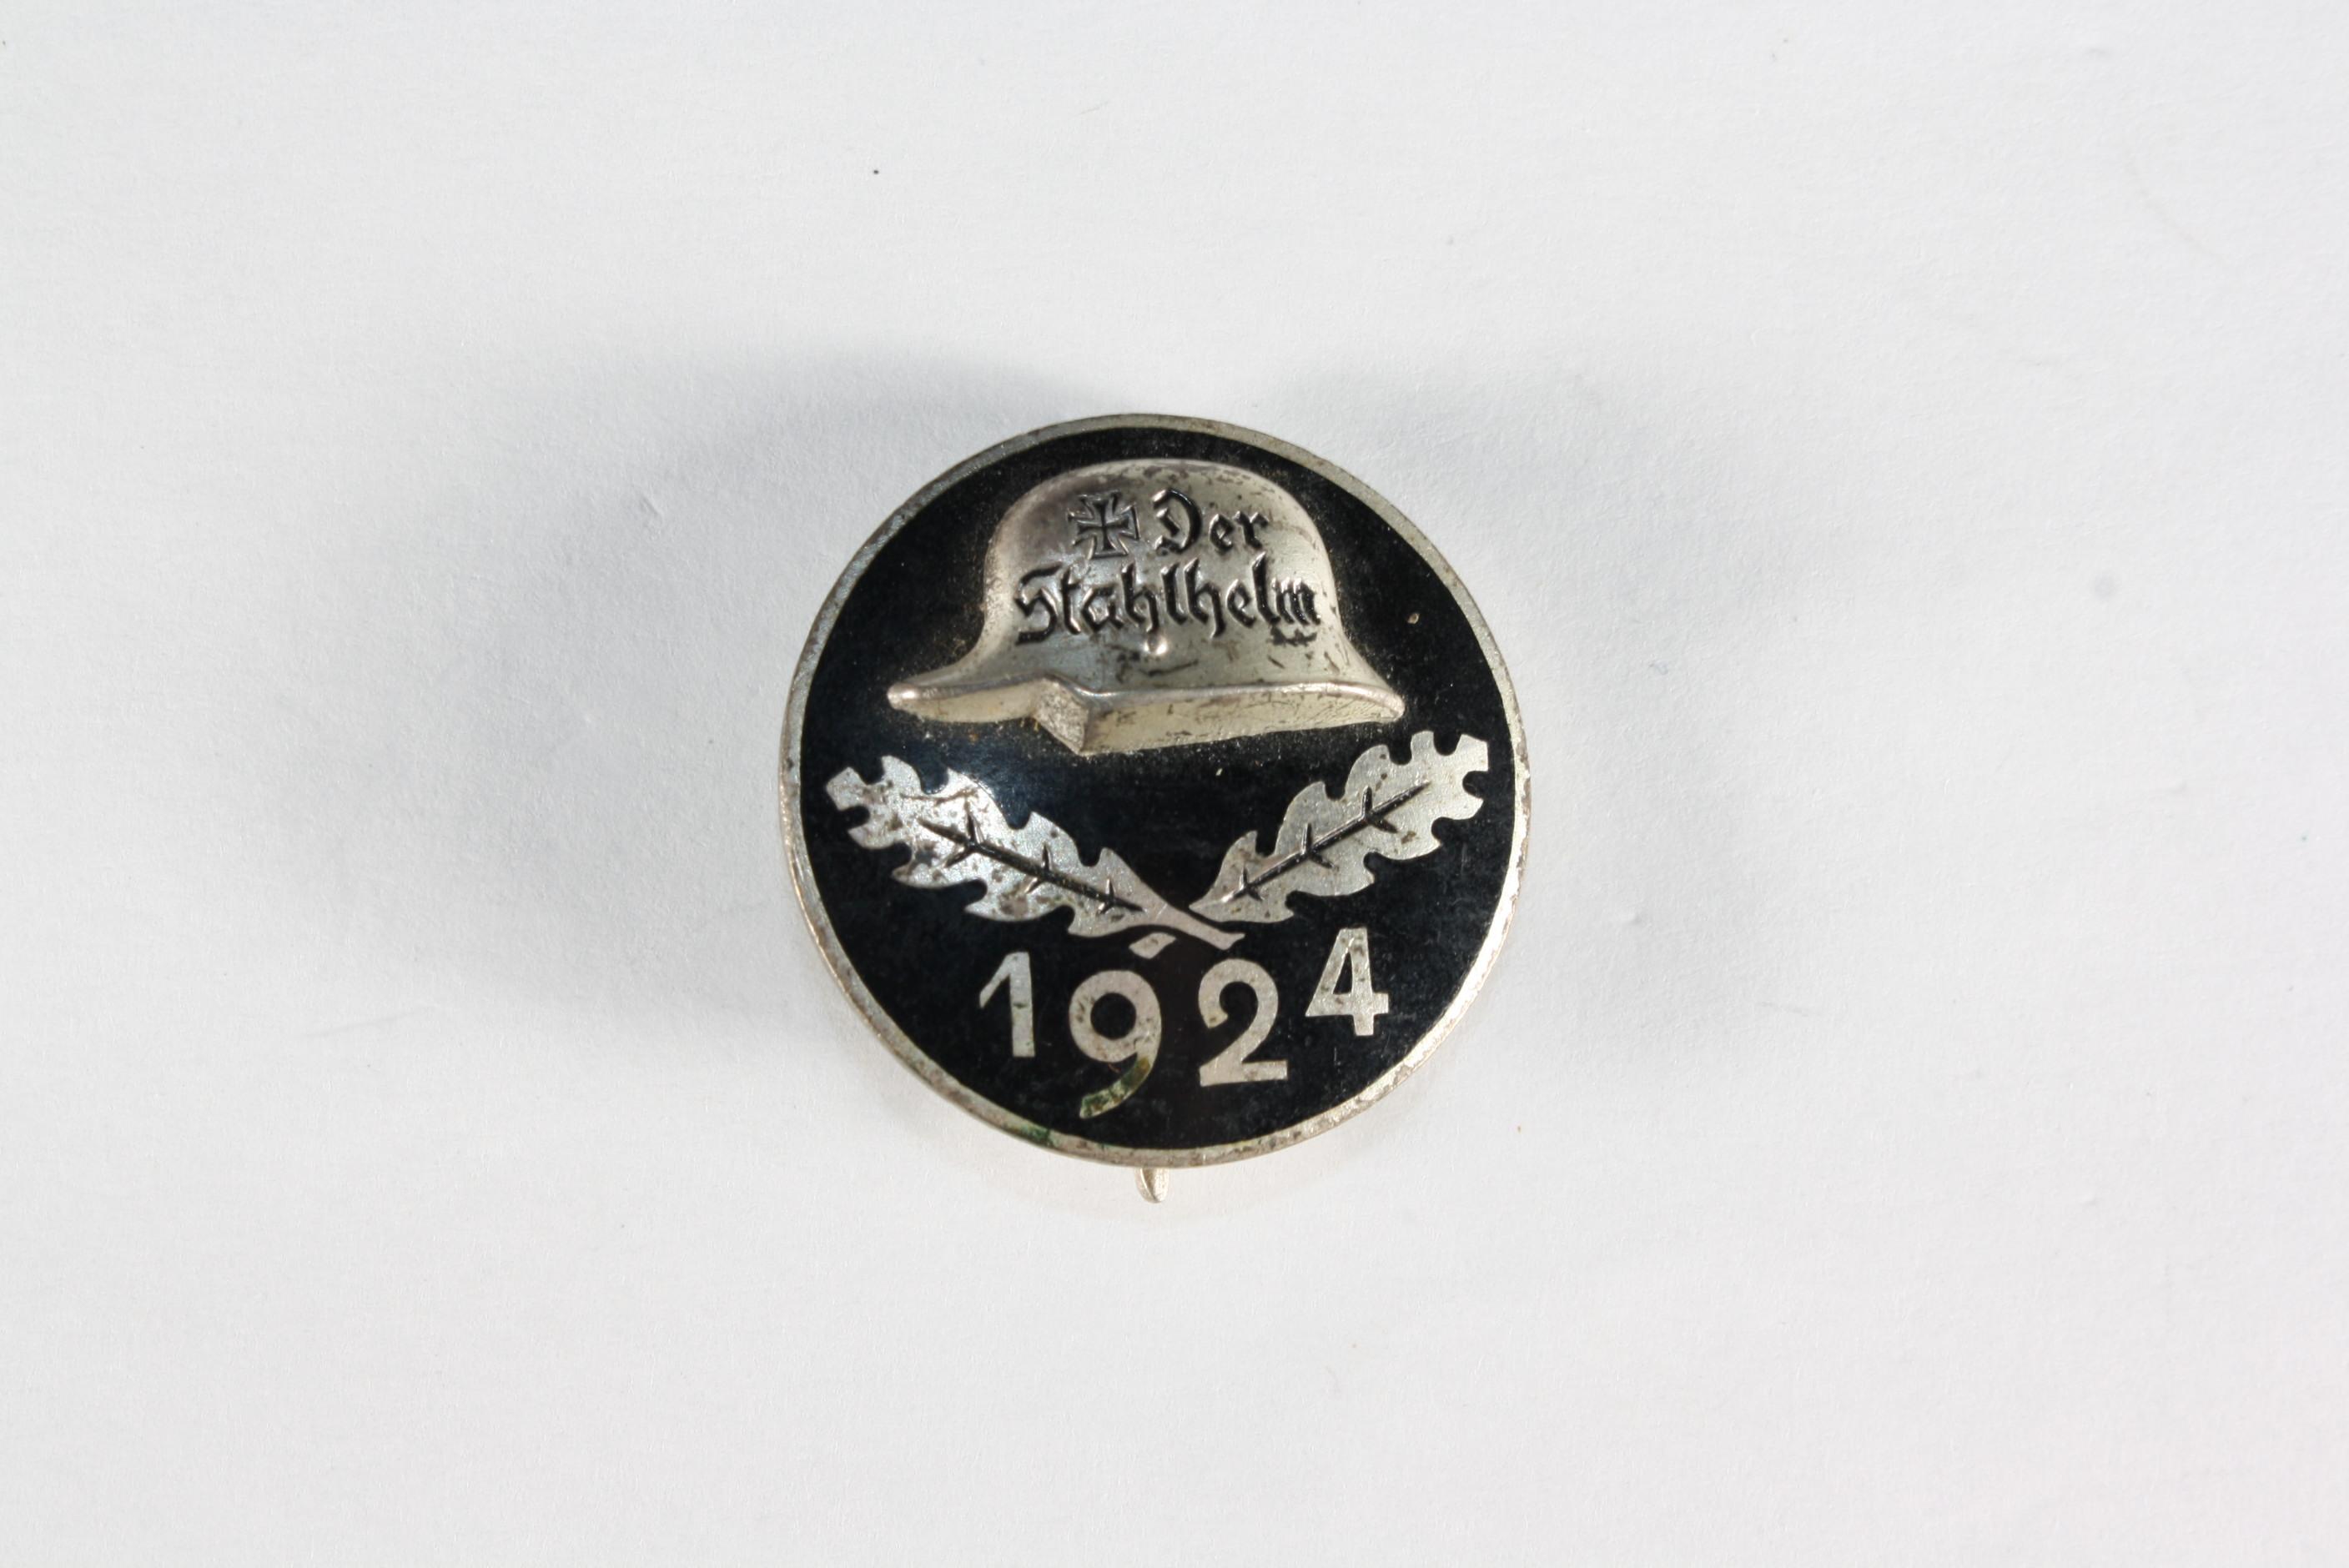 German 1924 Stahlhelm membership pin.